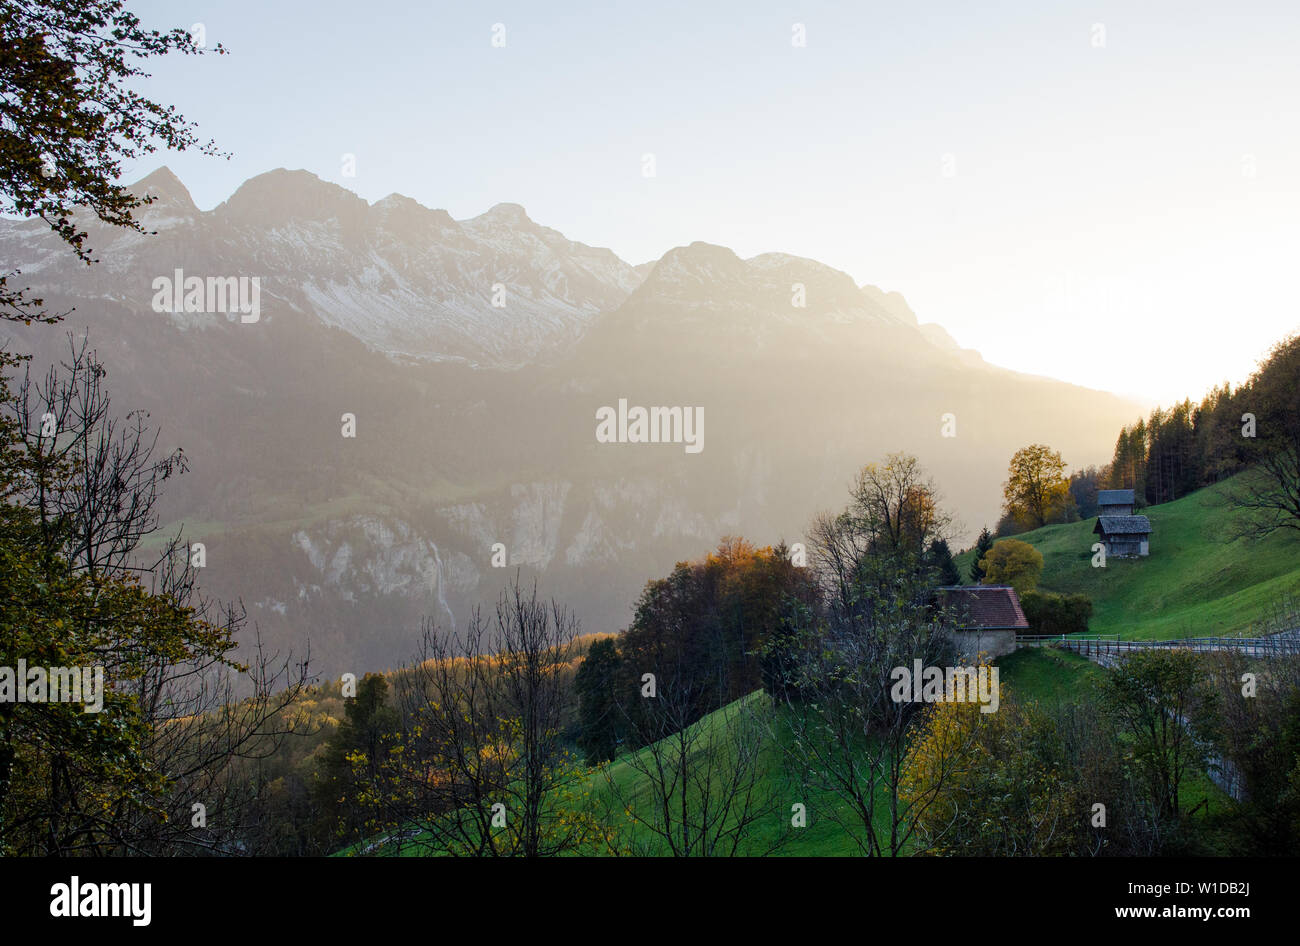 Bautiful Sunset in alps mountains by Brunigpass, nearby Brunig (Bruenig, Brünig), lake of Brienz, Lungern. Switzerland, Canton Bern, Obwalden Stock Photo